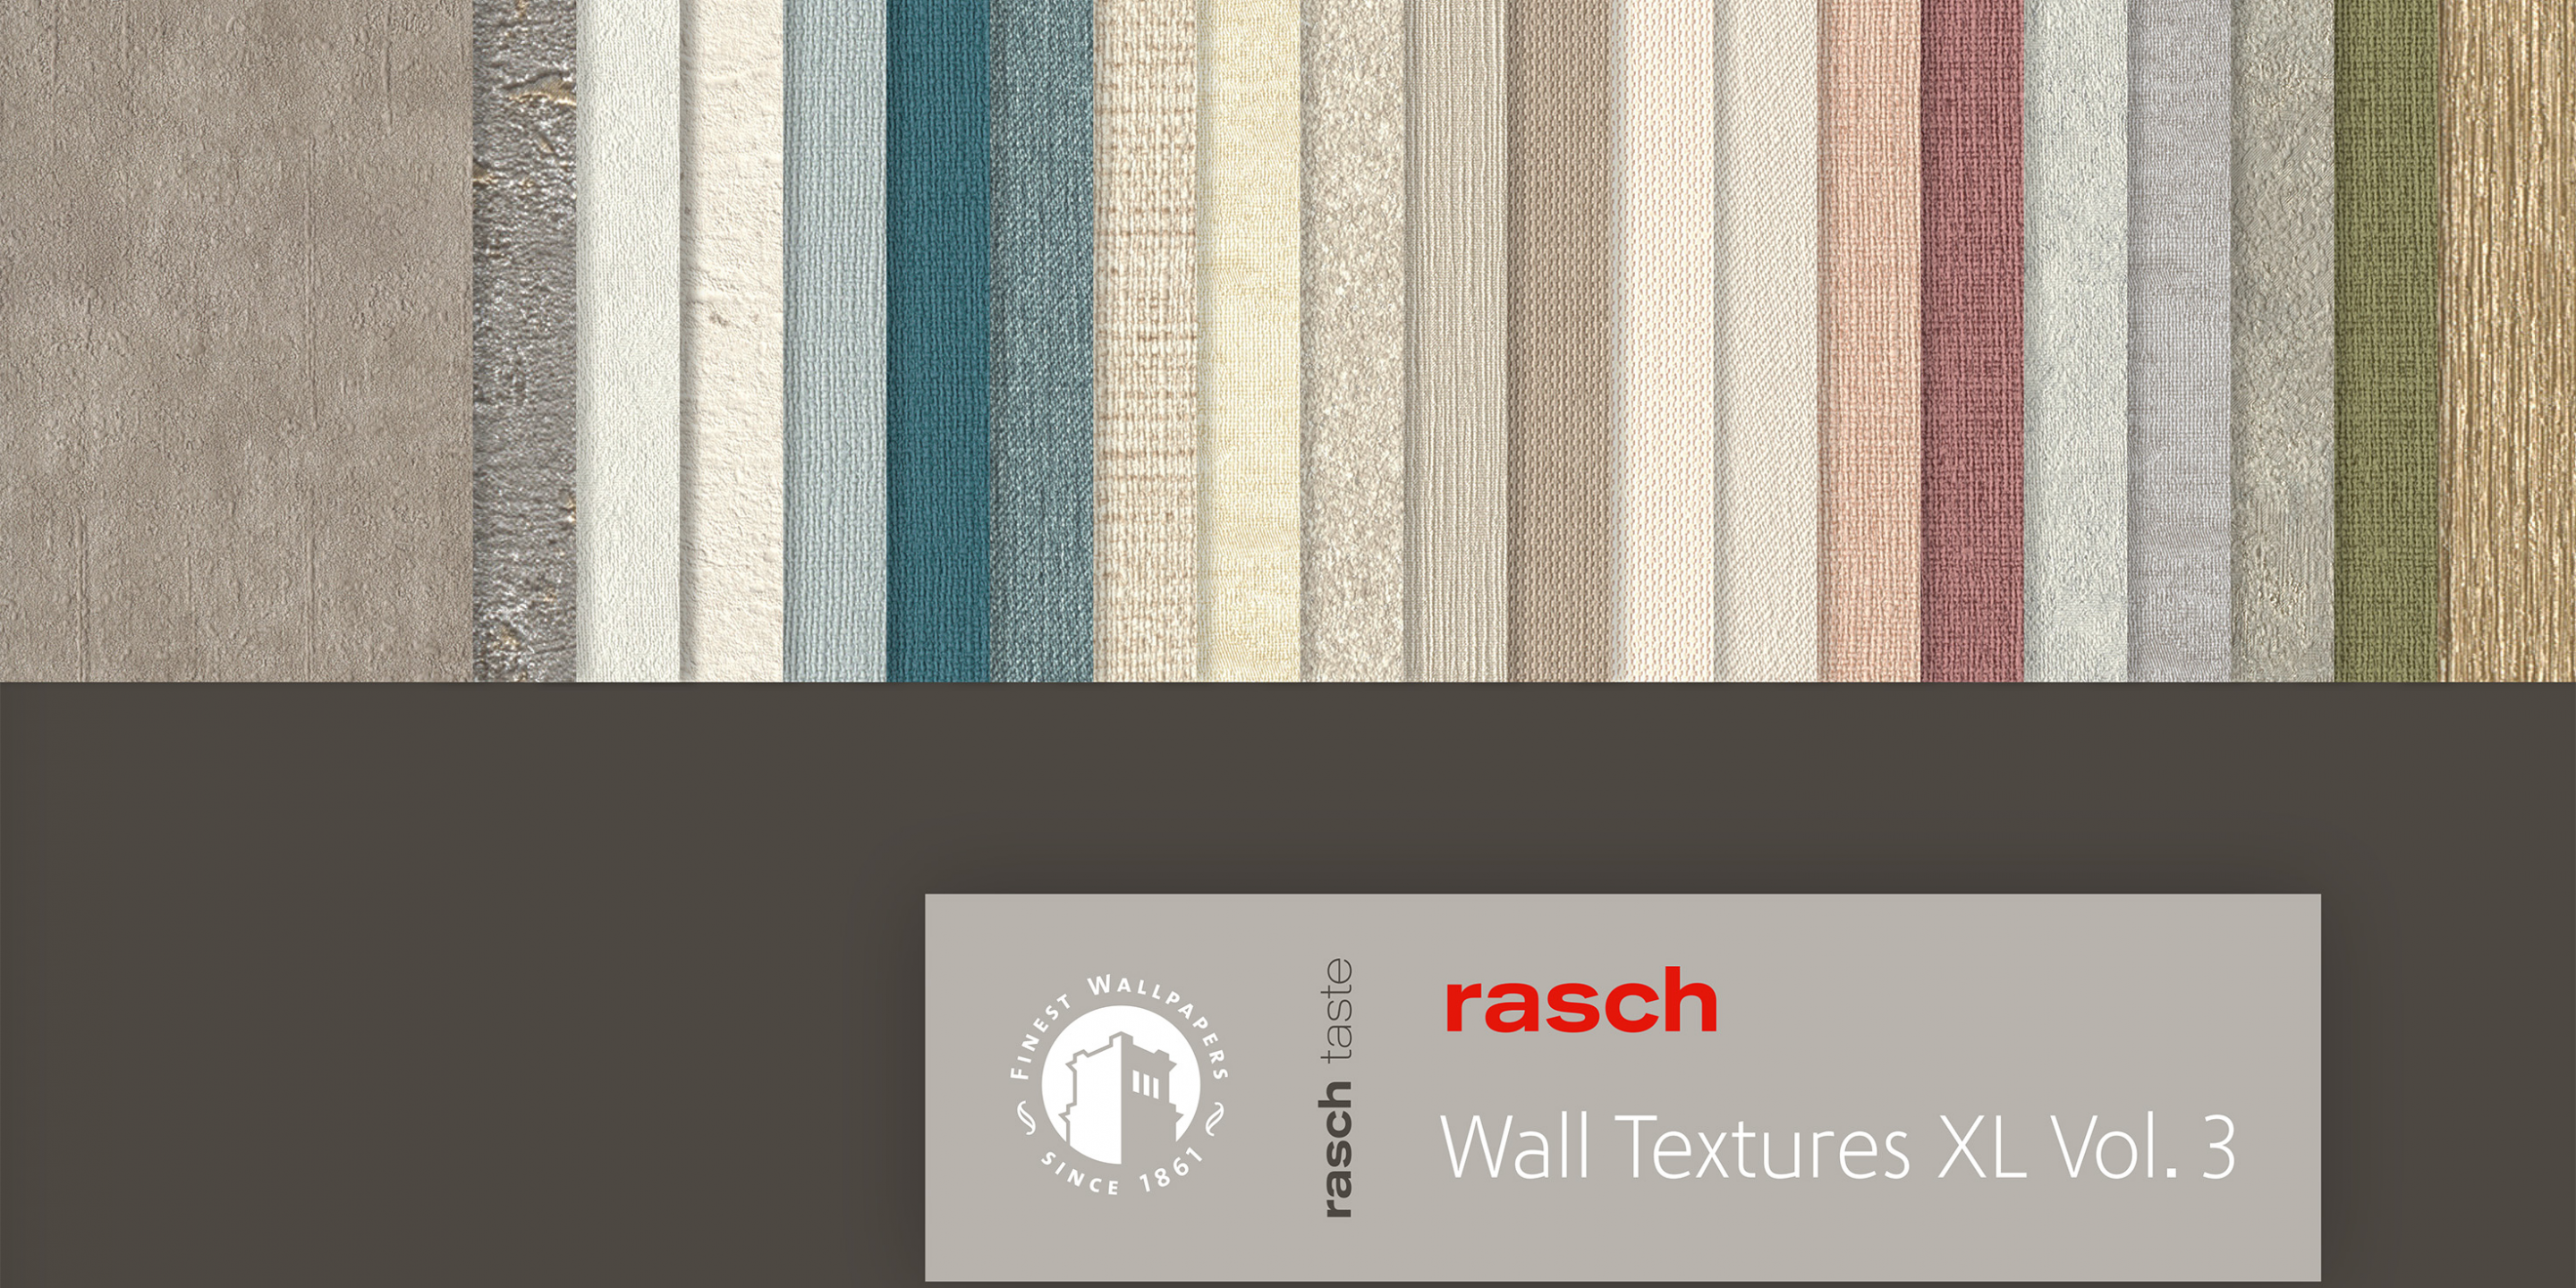 Wall Textures XL Vol.3